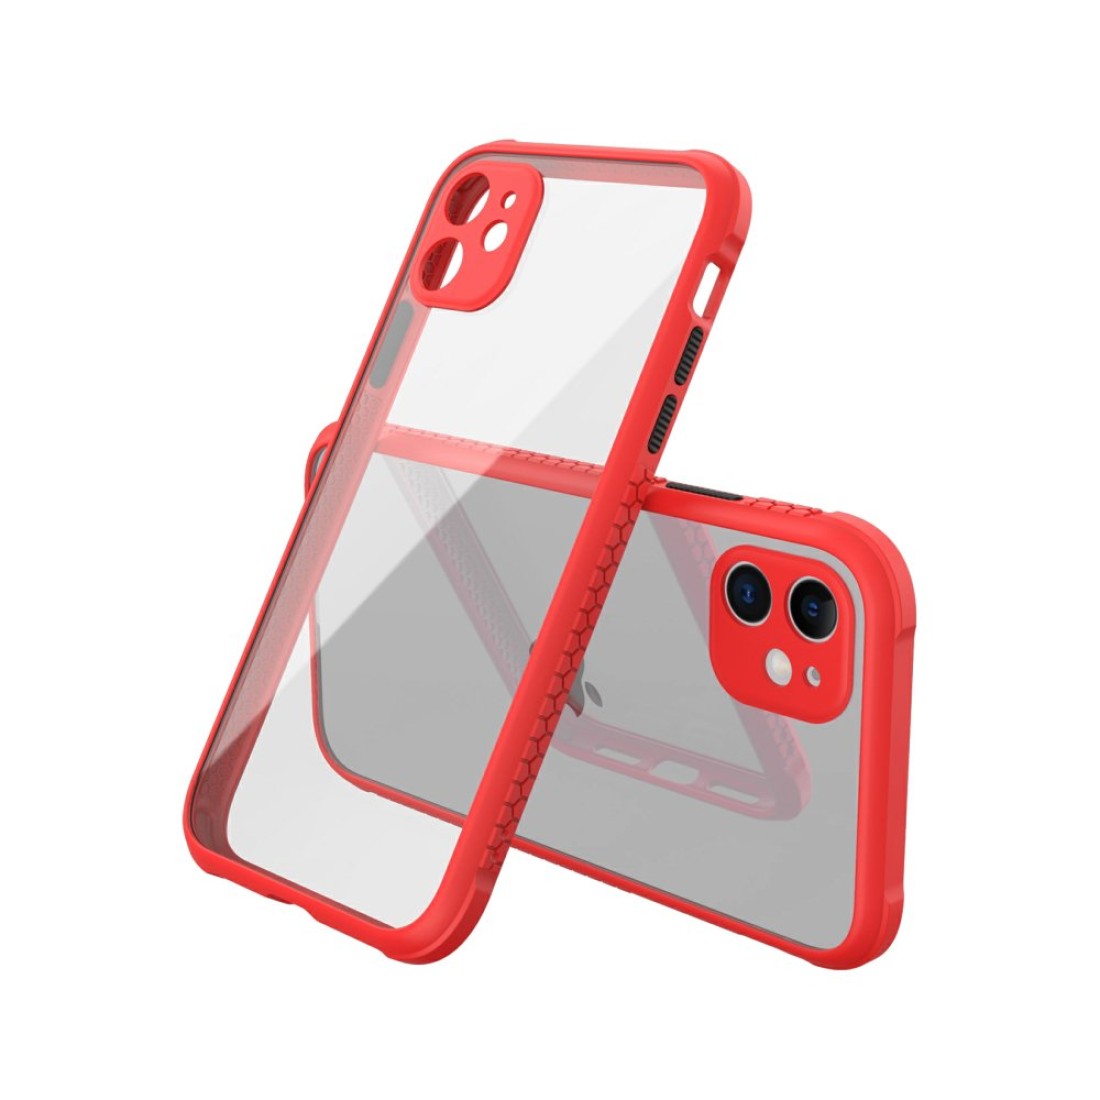 Apple iPhone 12 Mini Kılıf Miami Şeffaf Silikon  - Kırmızı